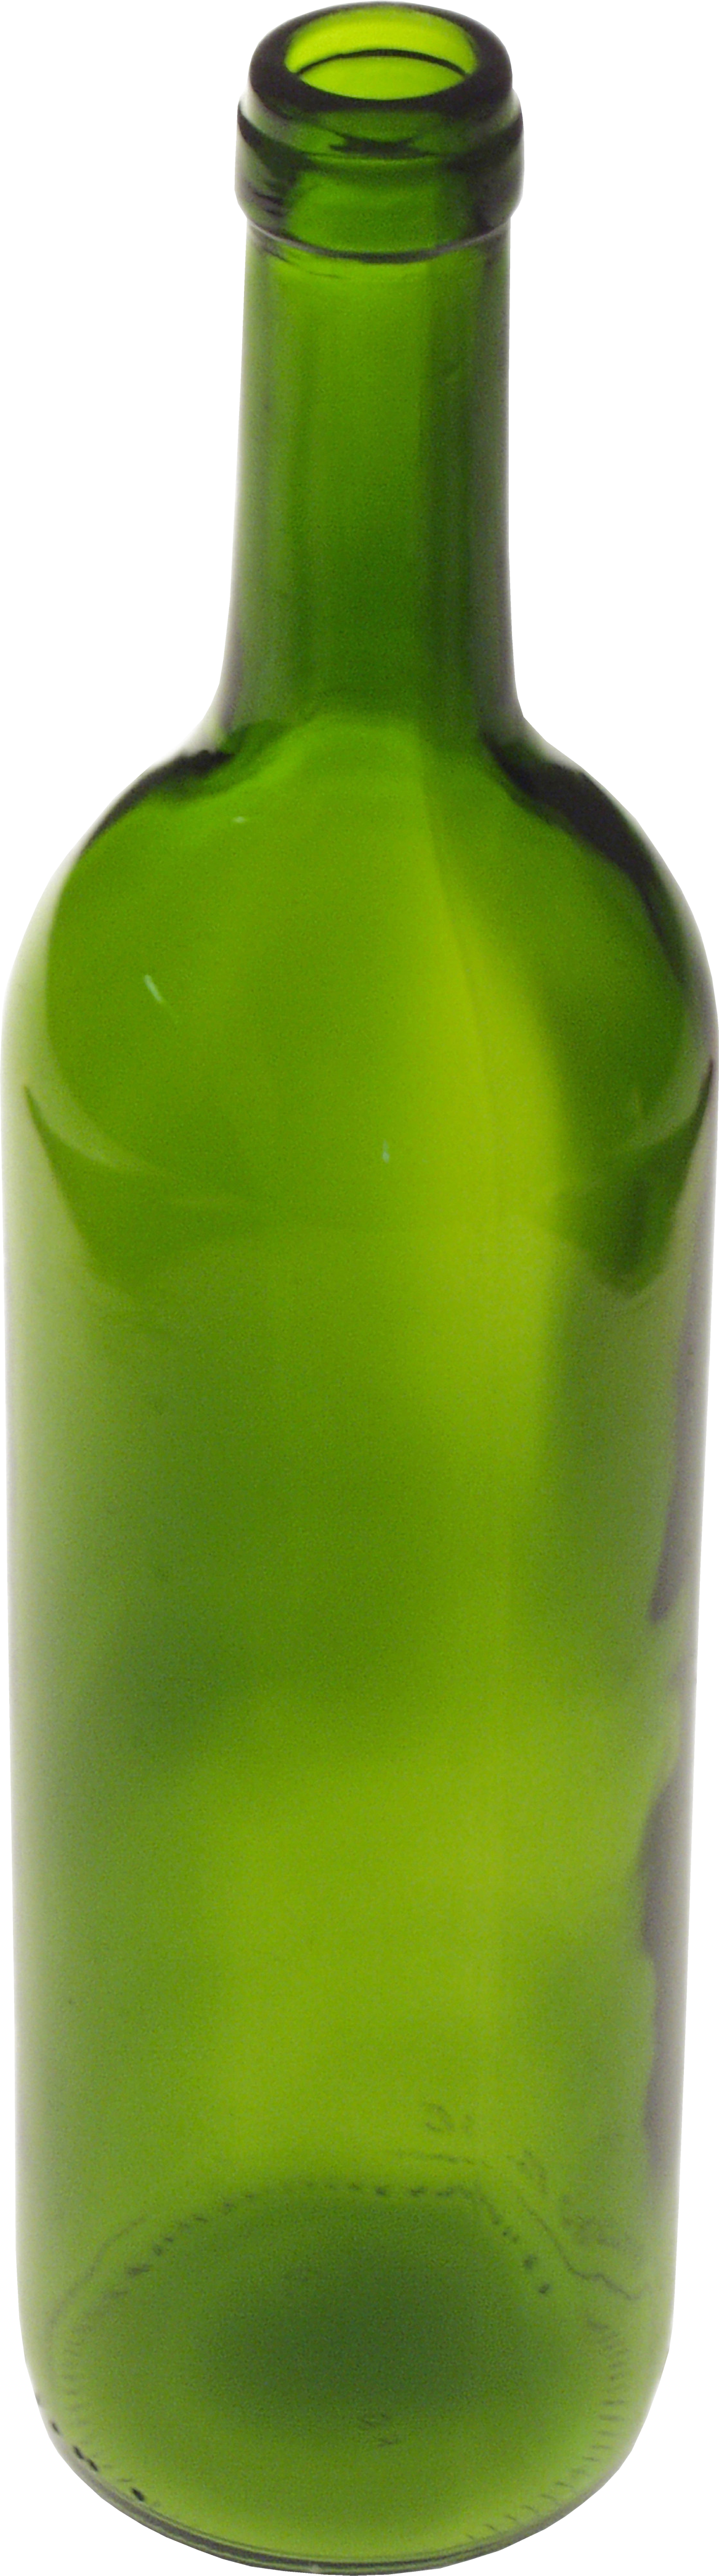 Botol kaca hijau